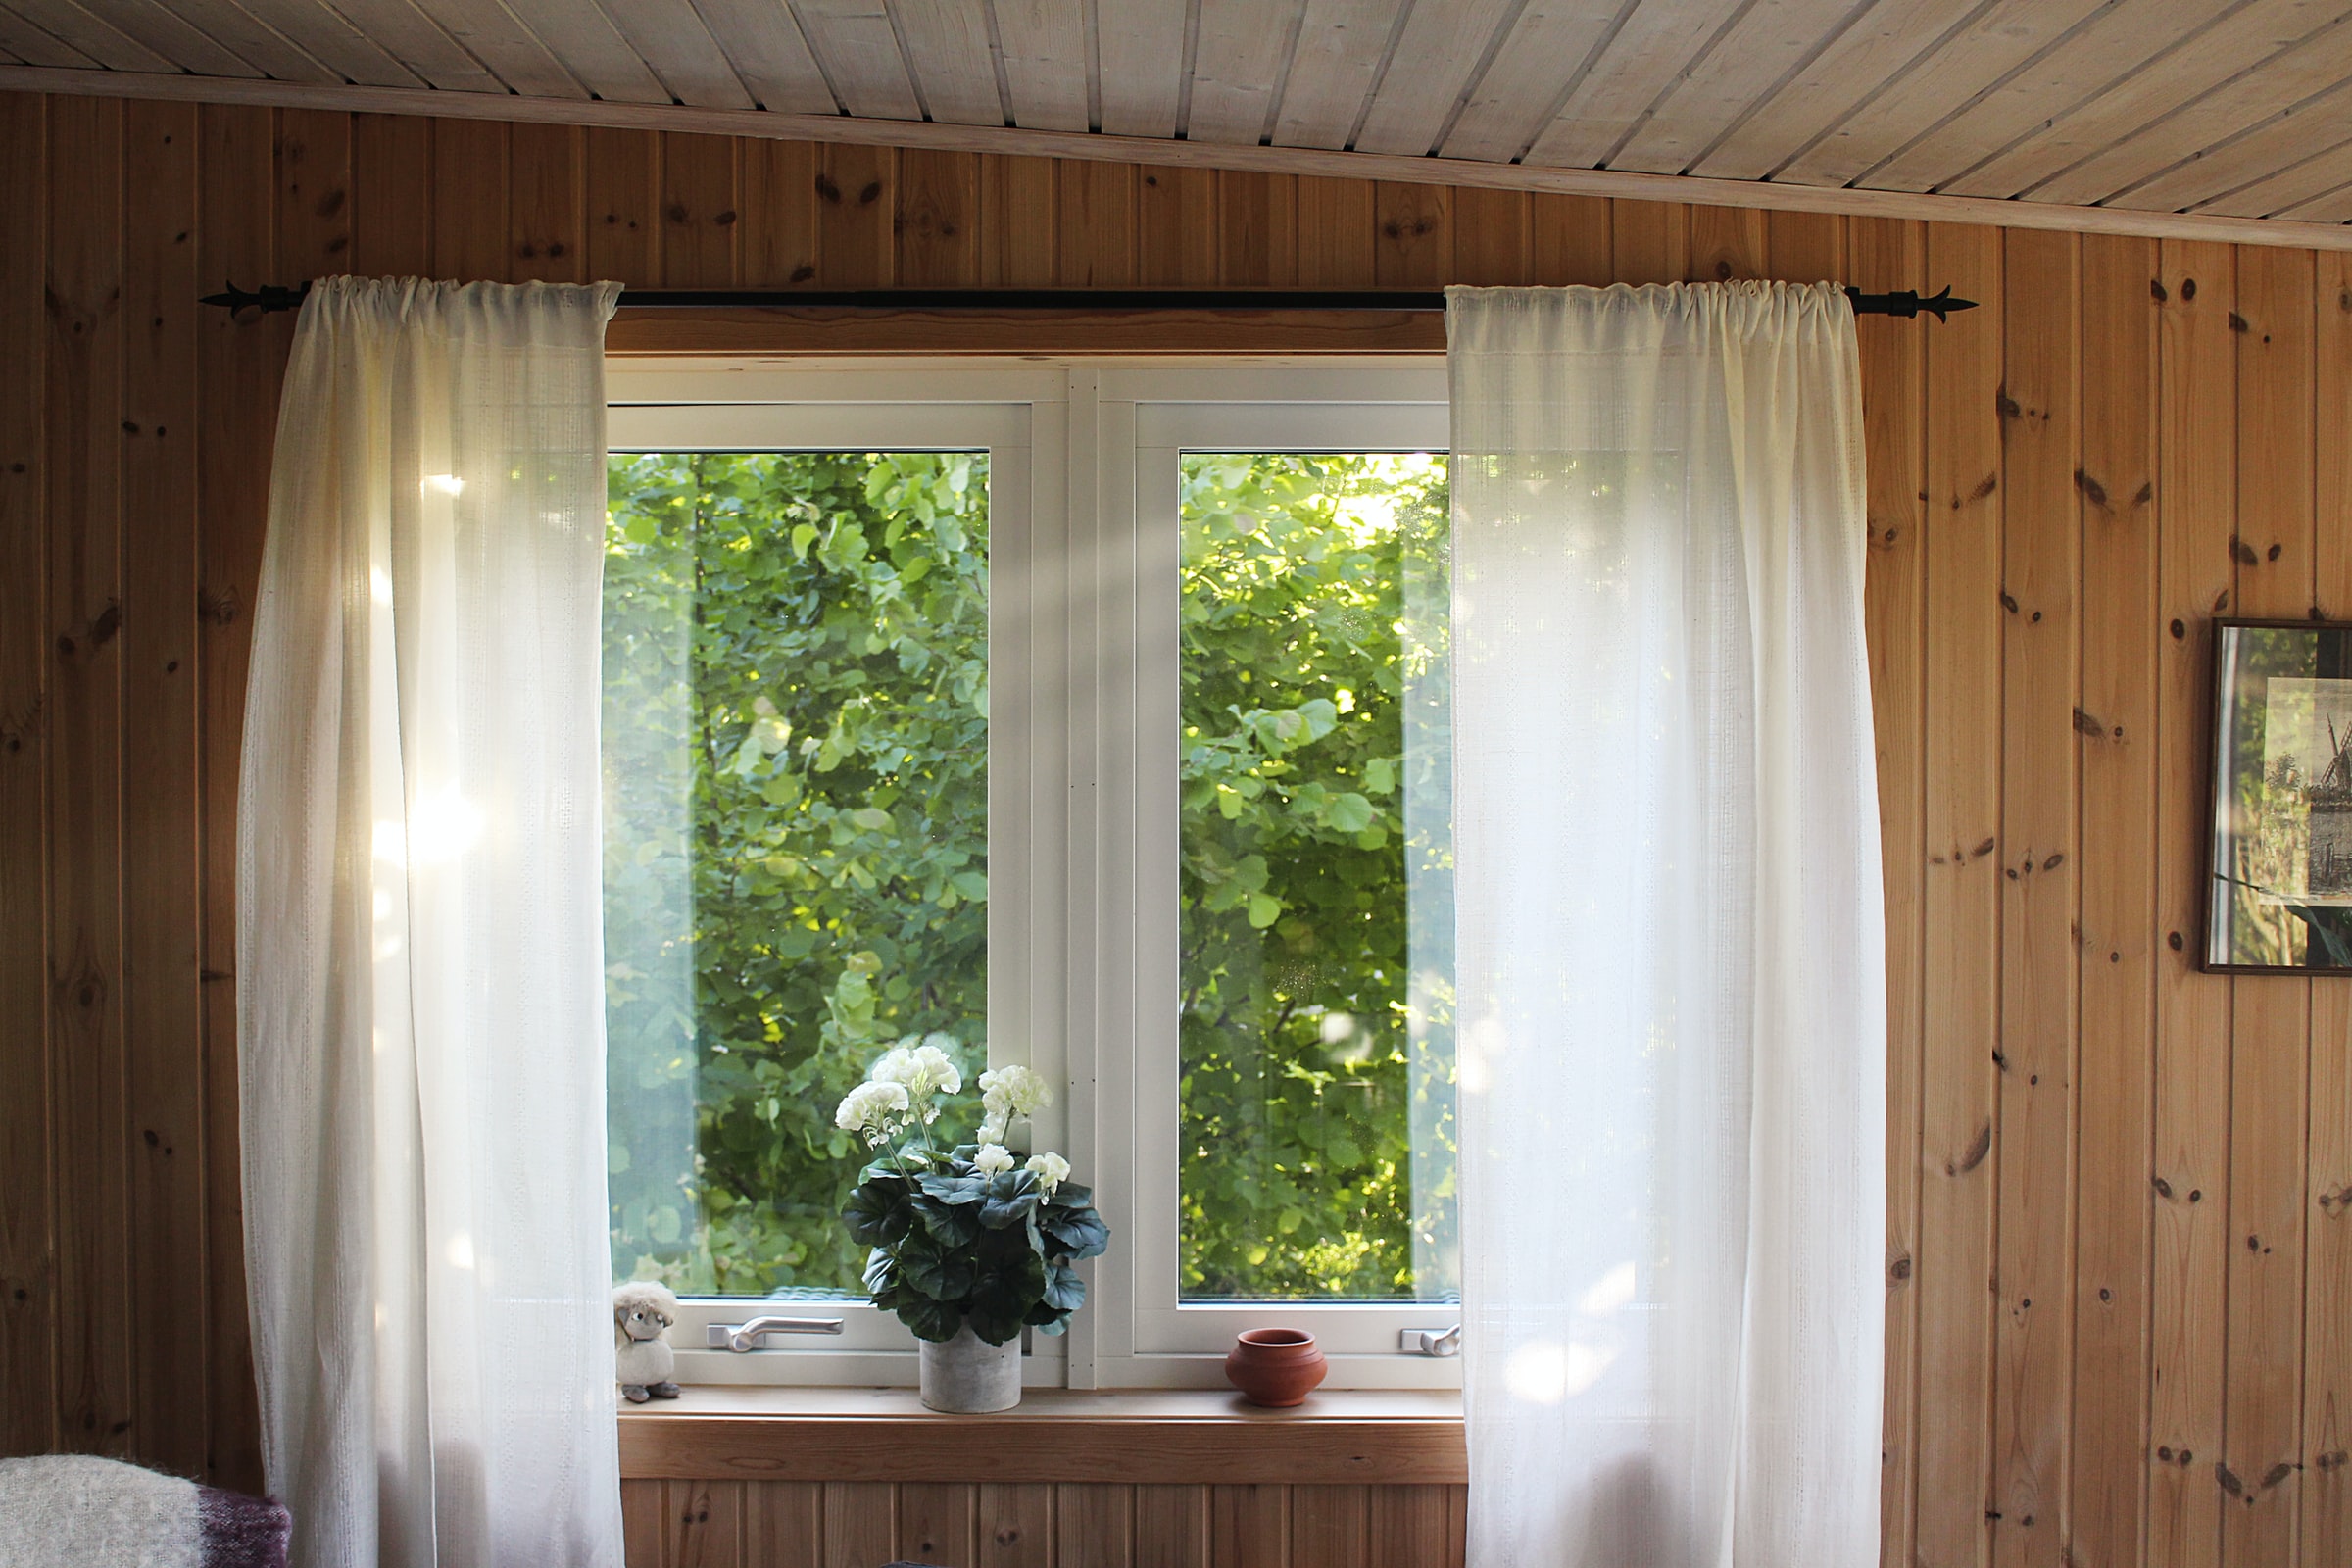 向外望向树林的窗户。窗户的两边都有白色的窗帘。窗台上有一个橙色的碗和一个花瓶。